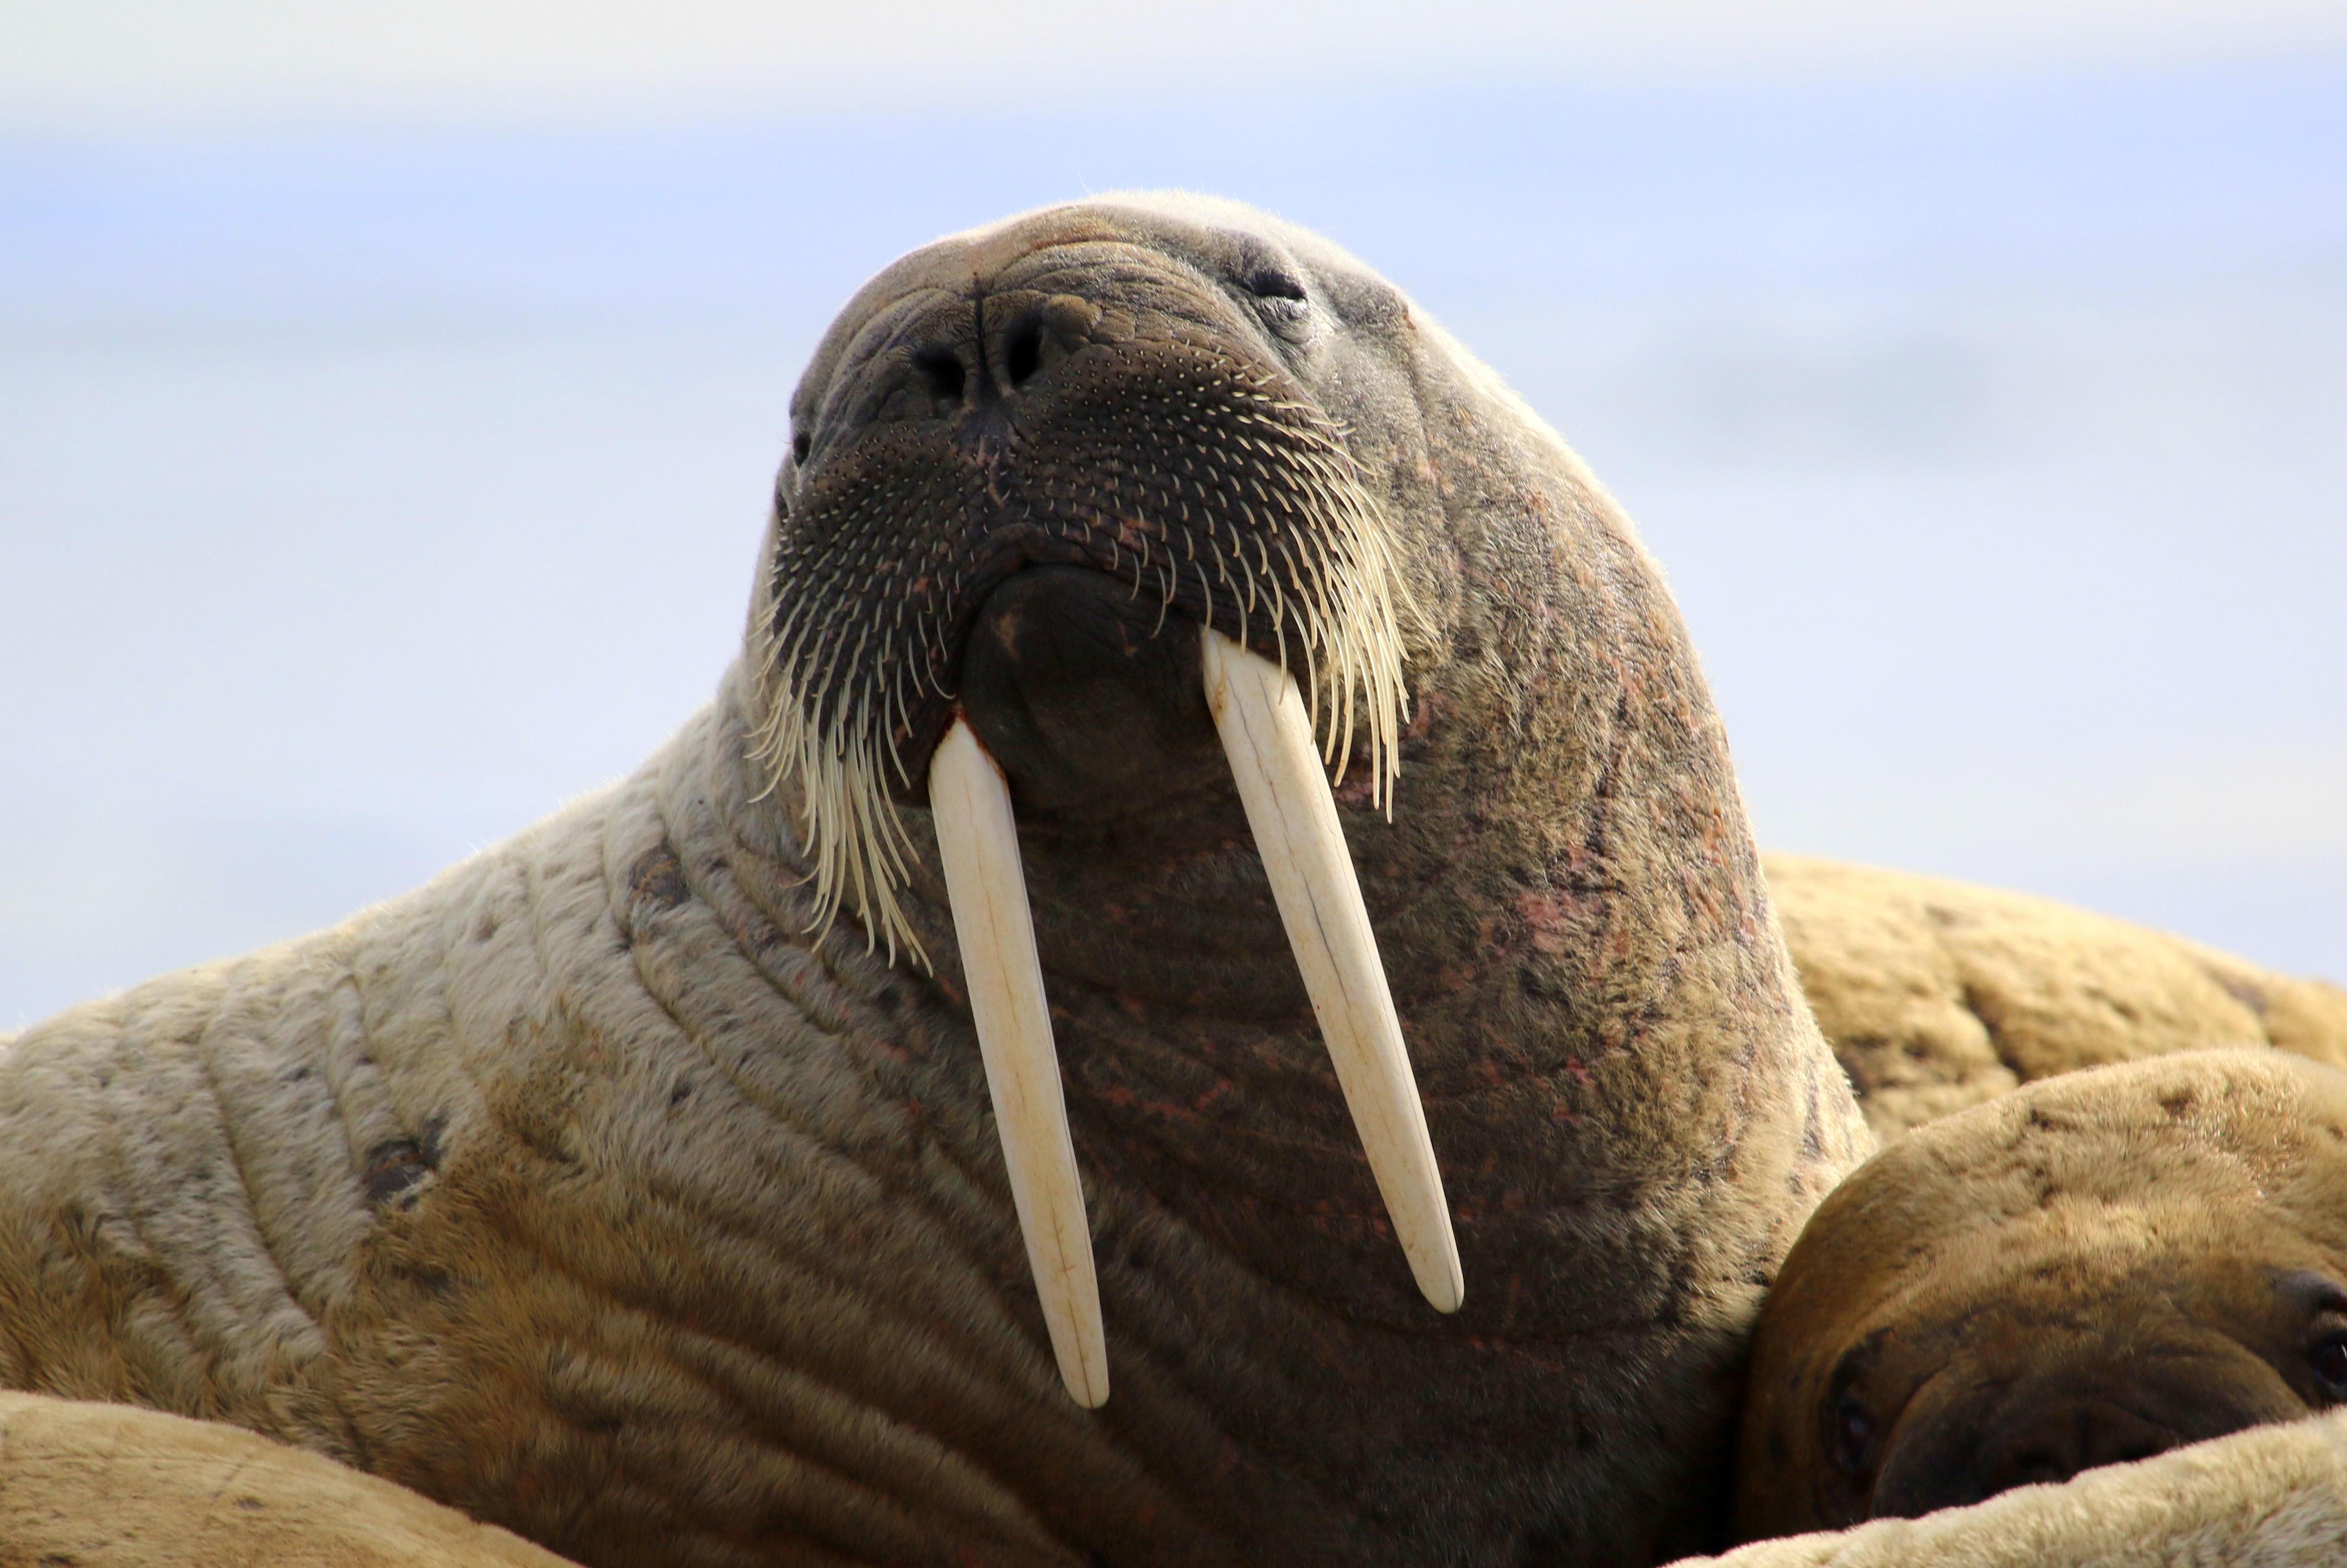 Un morse dont on voit les défenses.//Walrus showing its tusks